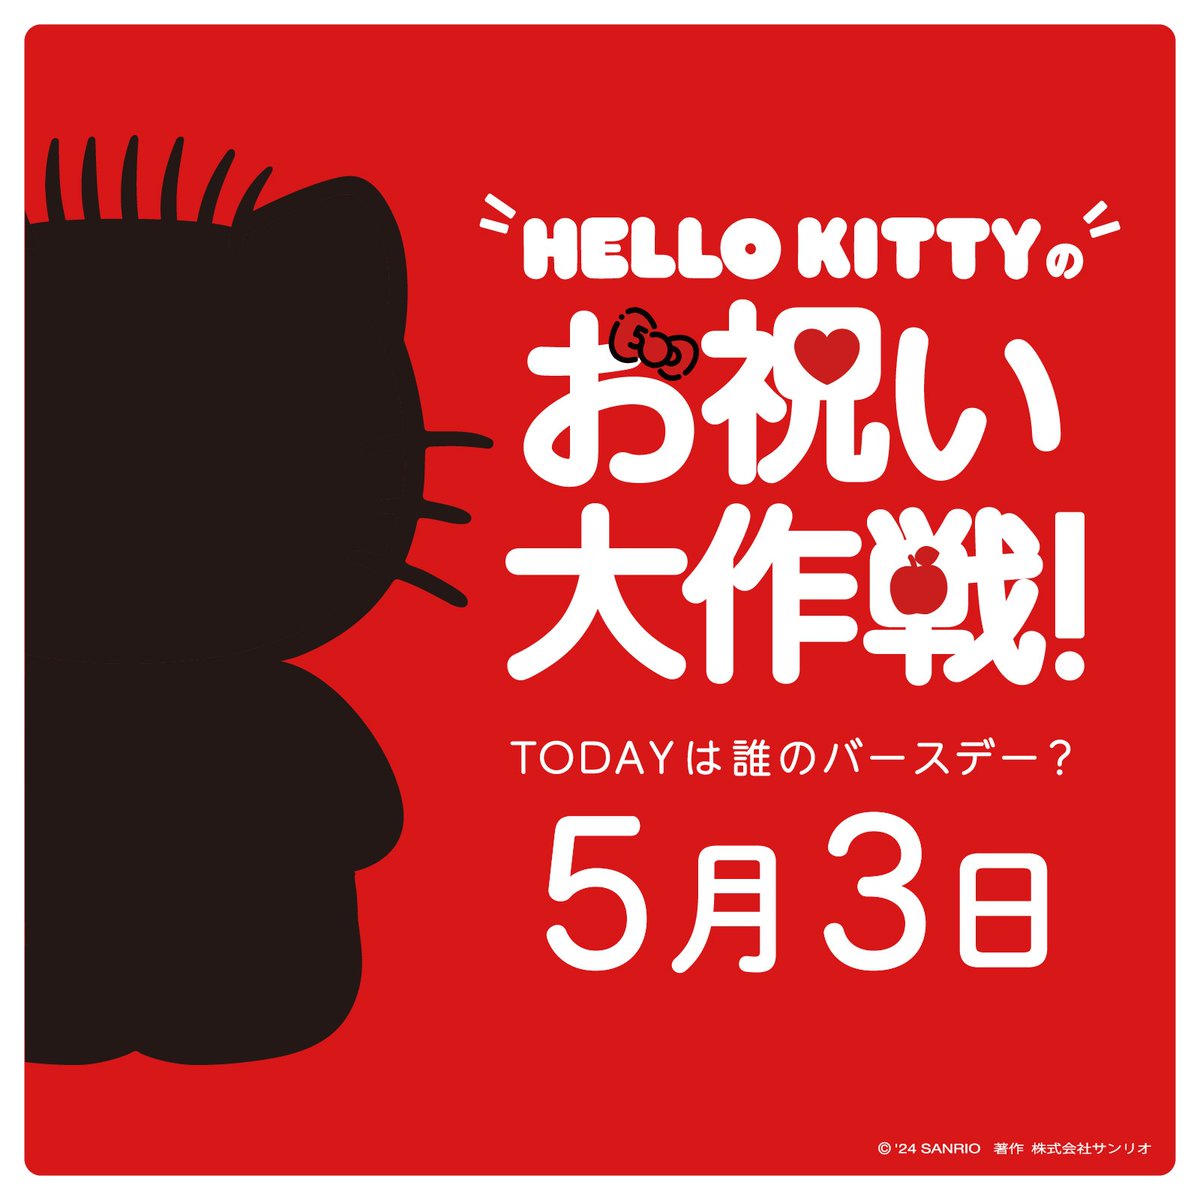 50thアニバーサリーイヤーを迎えた #ハローキティ☆みんなにも特別な一年を過ごしてほしいという思いから、キティは大切な人たちのお祝いをすることで頭がいっぱい♡今回は5/3がお誕生日☆キティのボーイフレンドのあのコ！？また新たな大作戦が始動するよ♪ sanrio.lnky.jp/yO6G2L8